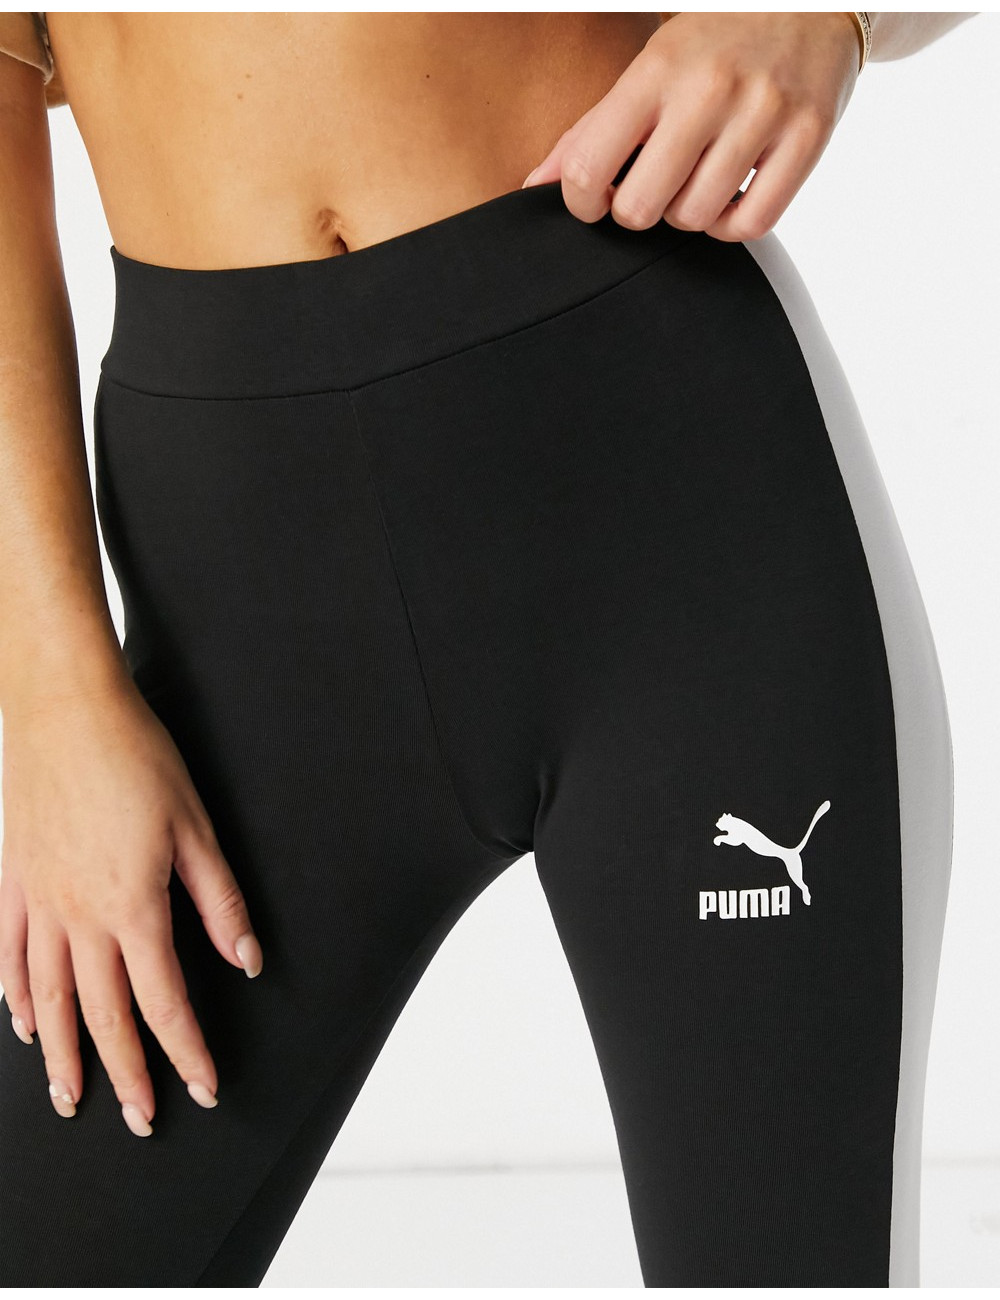 Puma classic logo leggings...